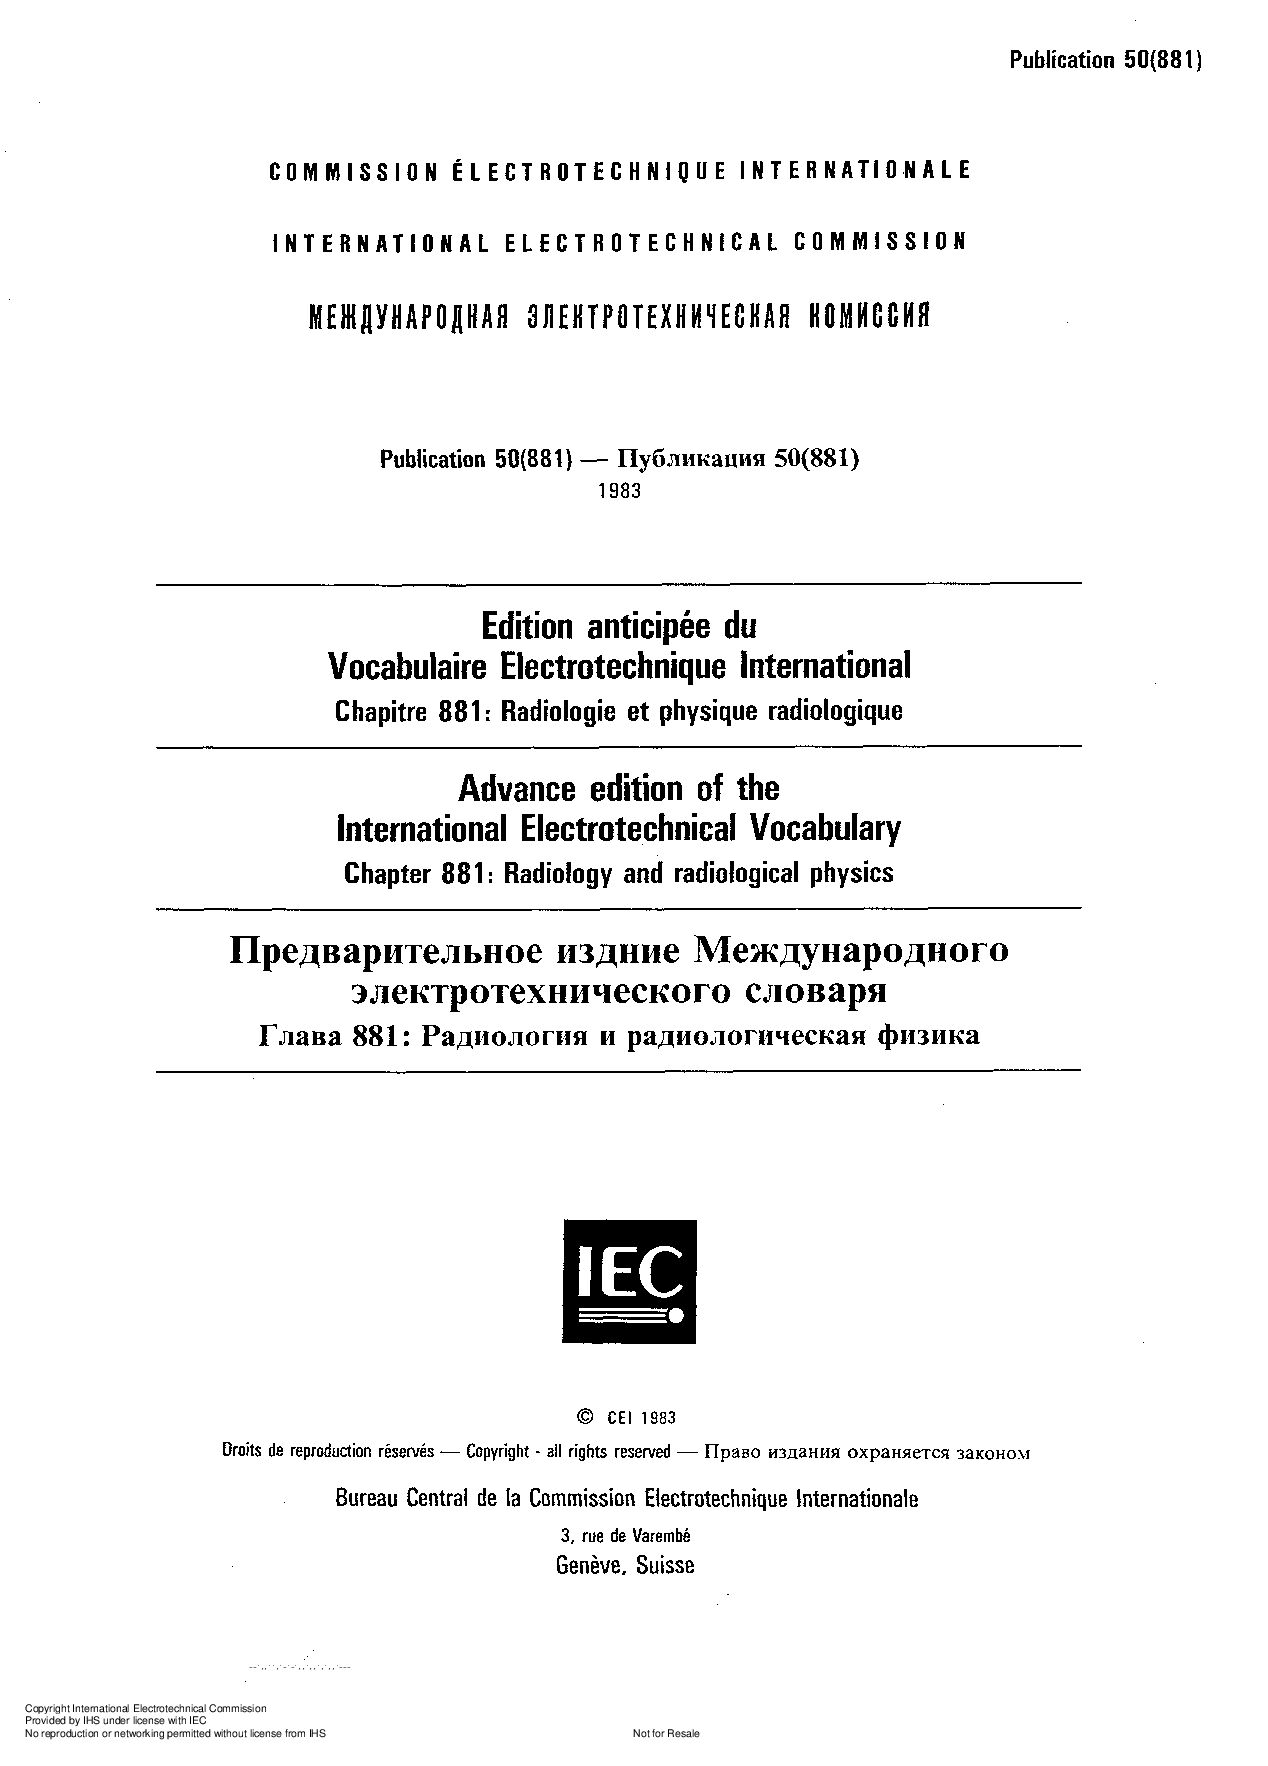 IEC 60050-881-1983